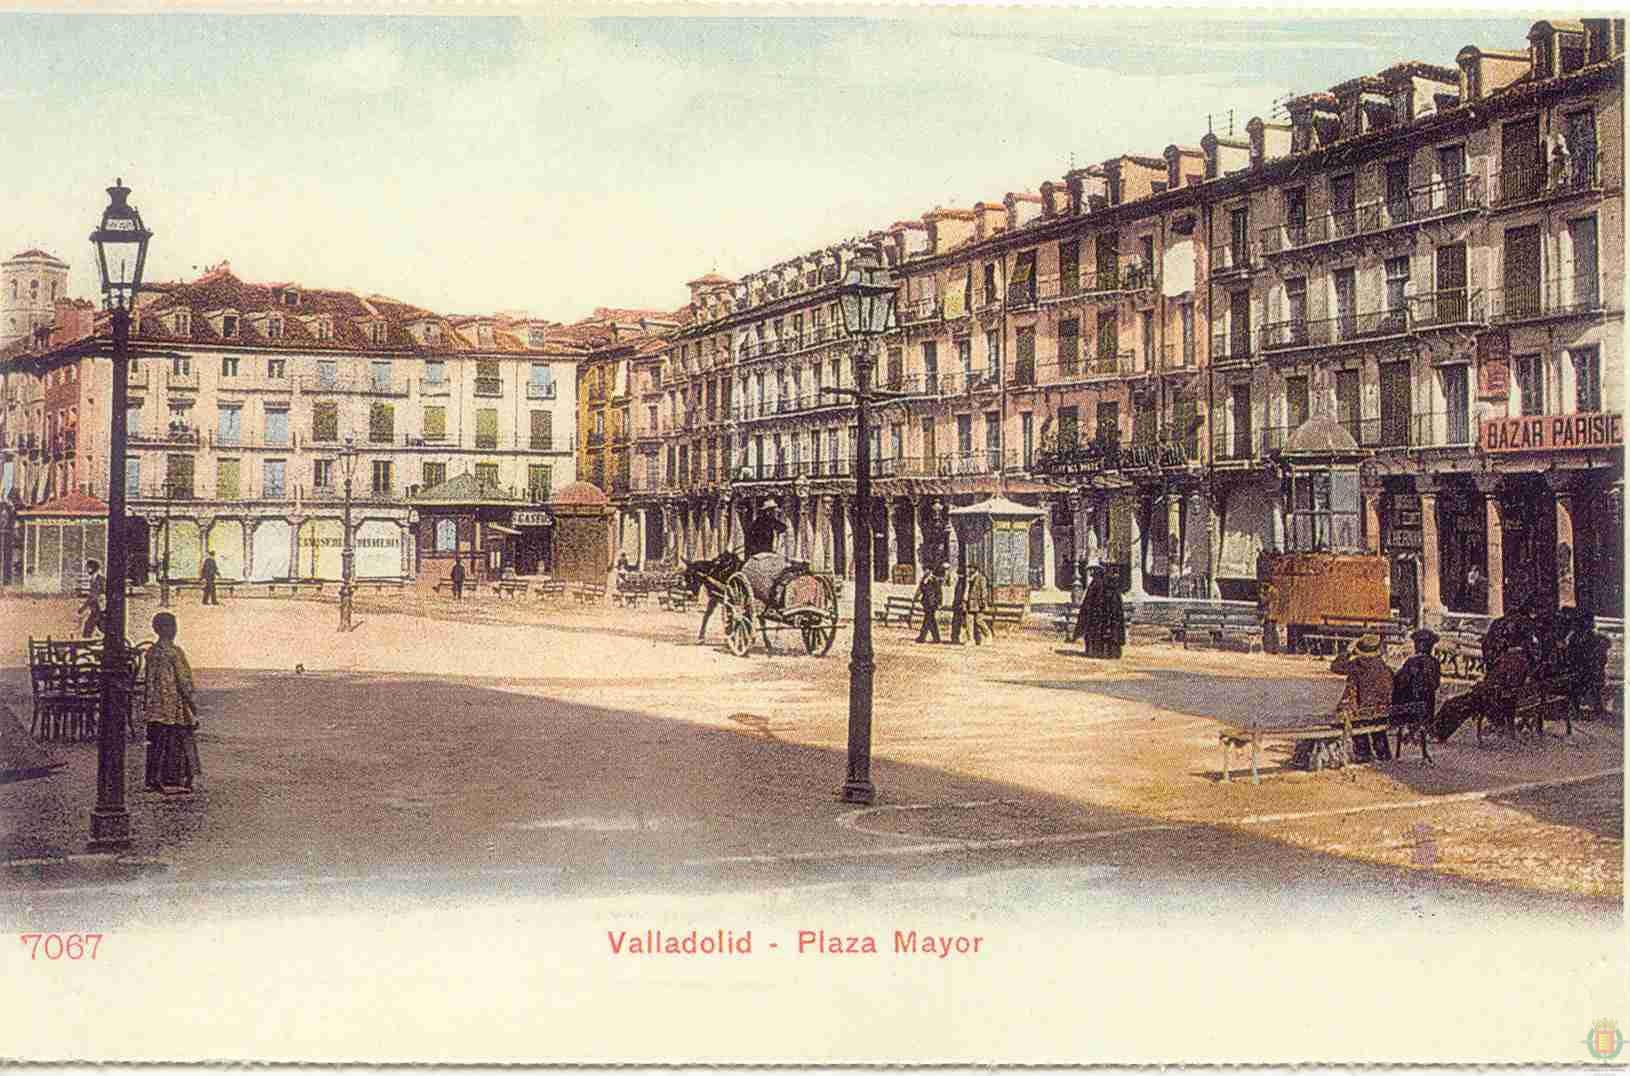 Fotos: Estampas del Valladolid antiguo (XIV): cuando los carros circulaban por la ciudad